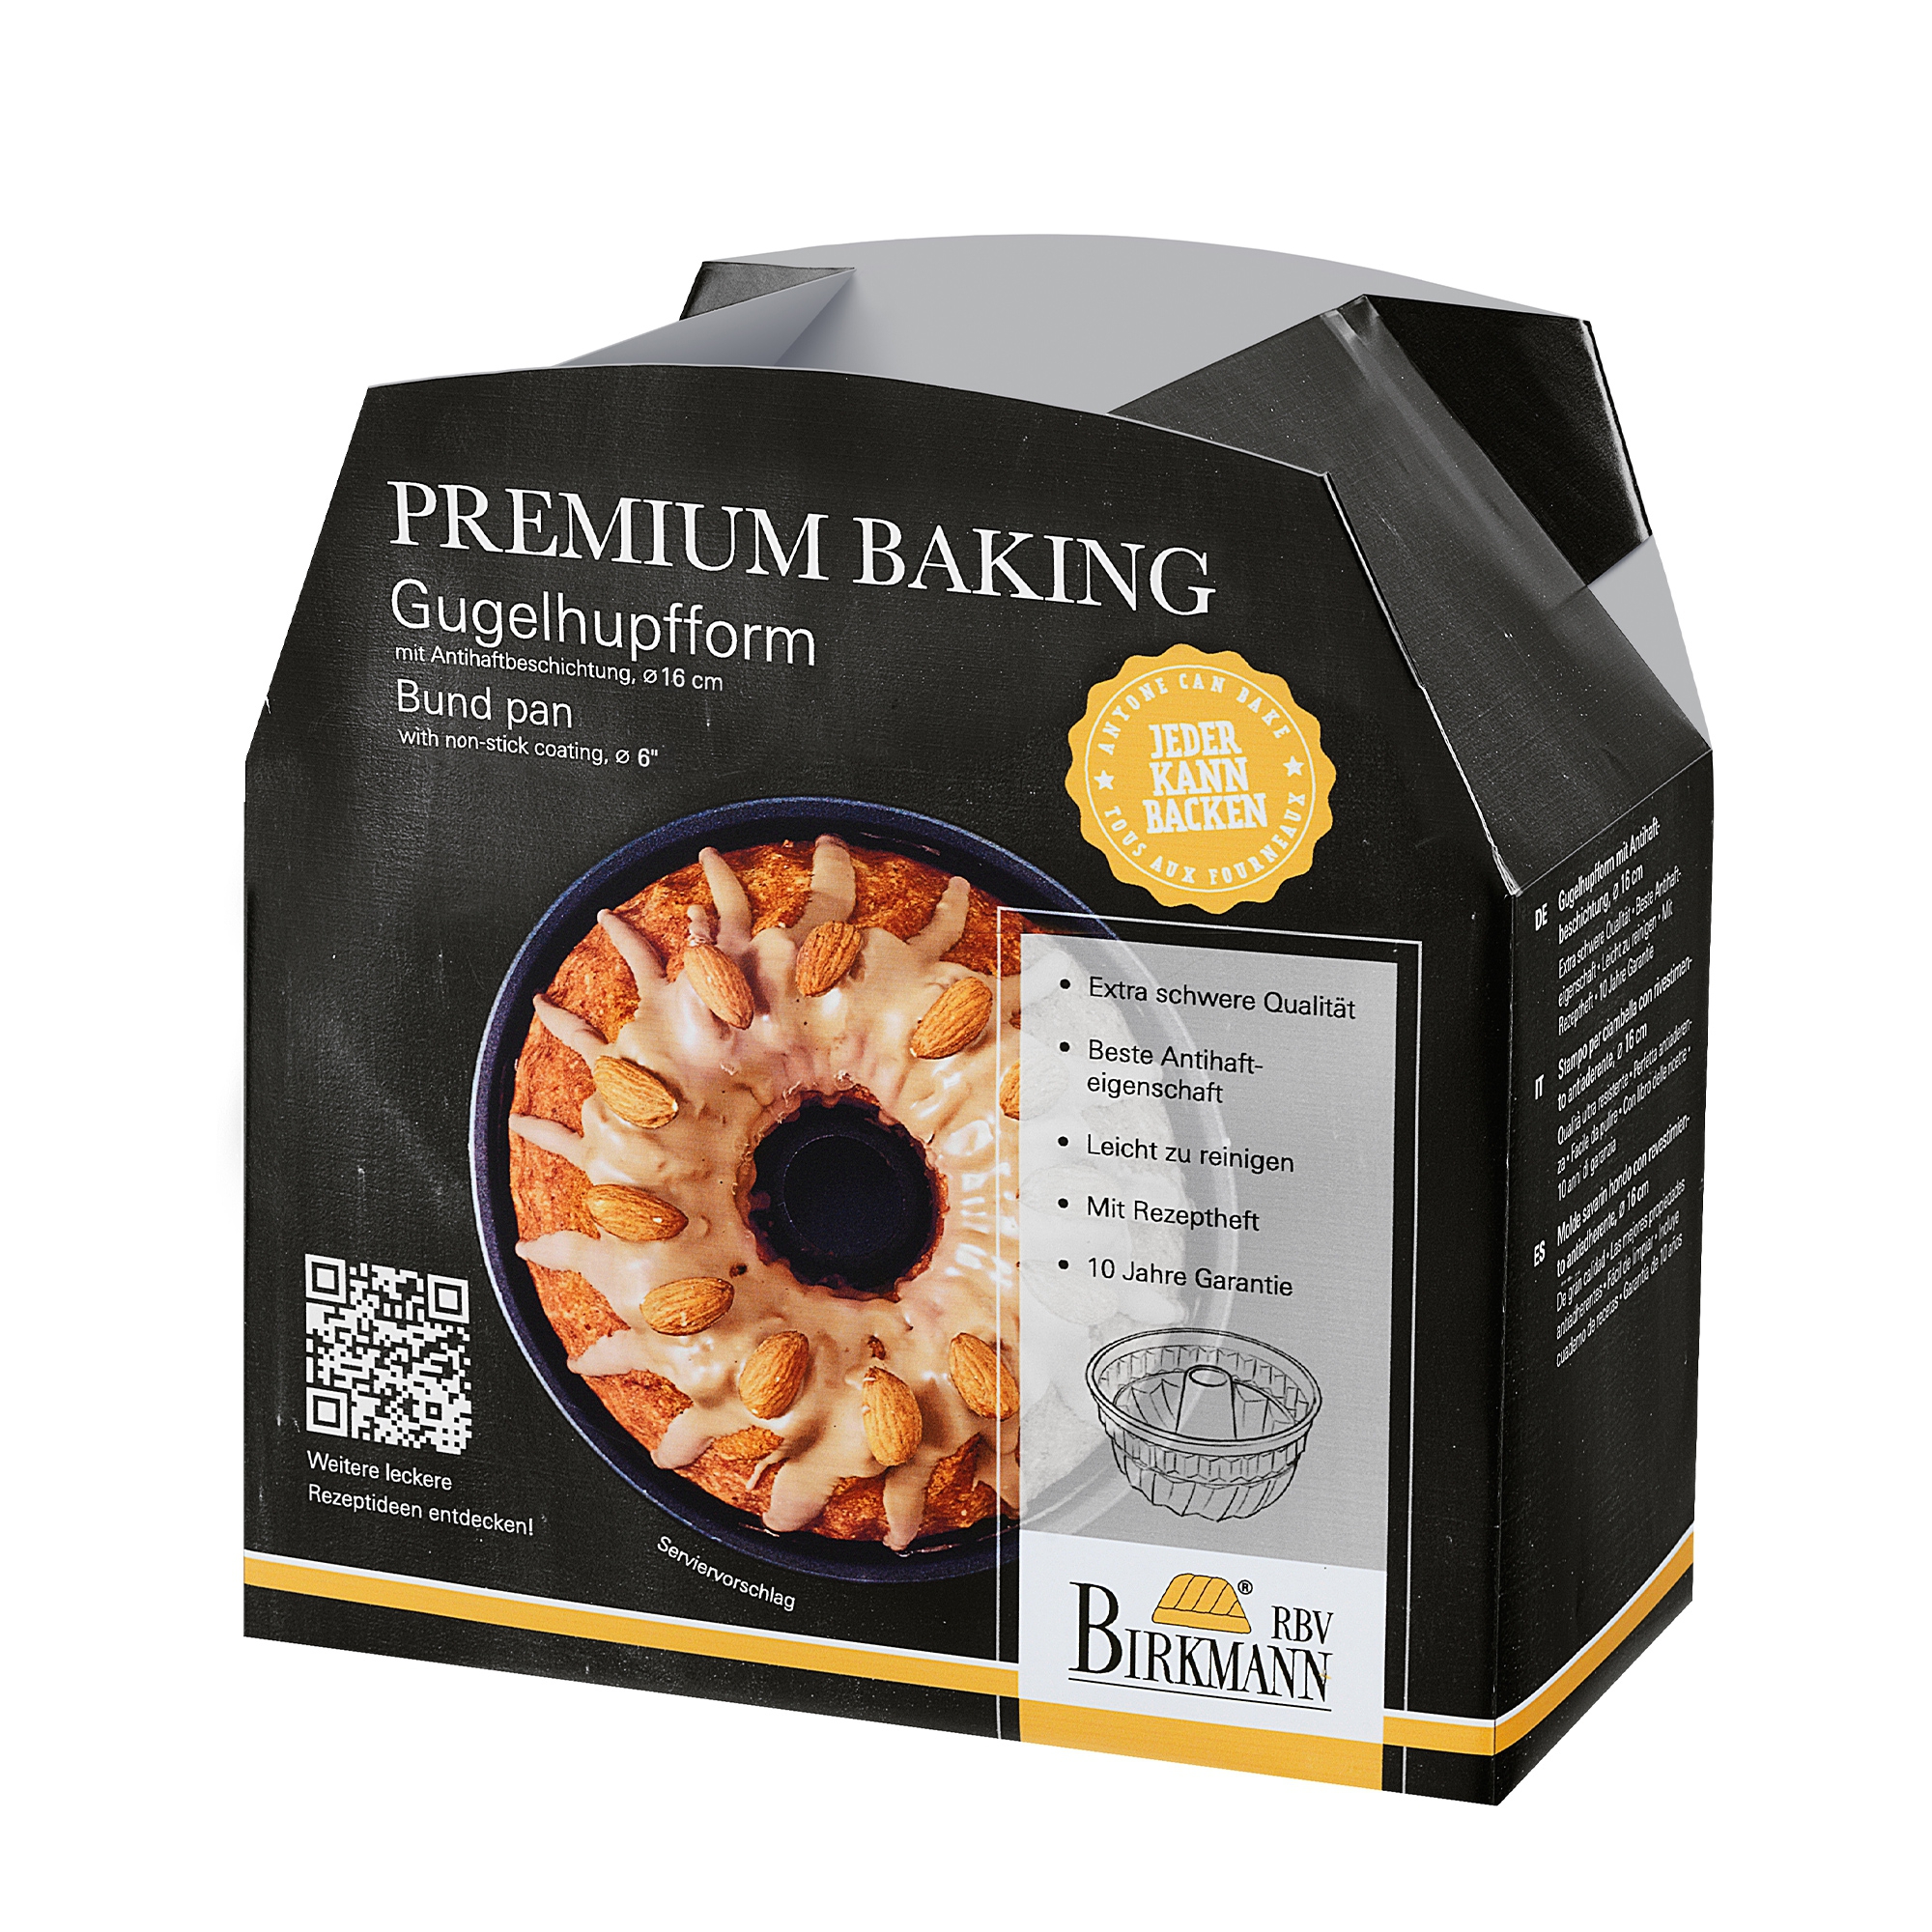 Birkmann - Bund pan Ø 16 cm - Premium Baking